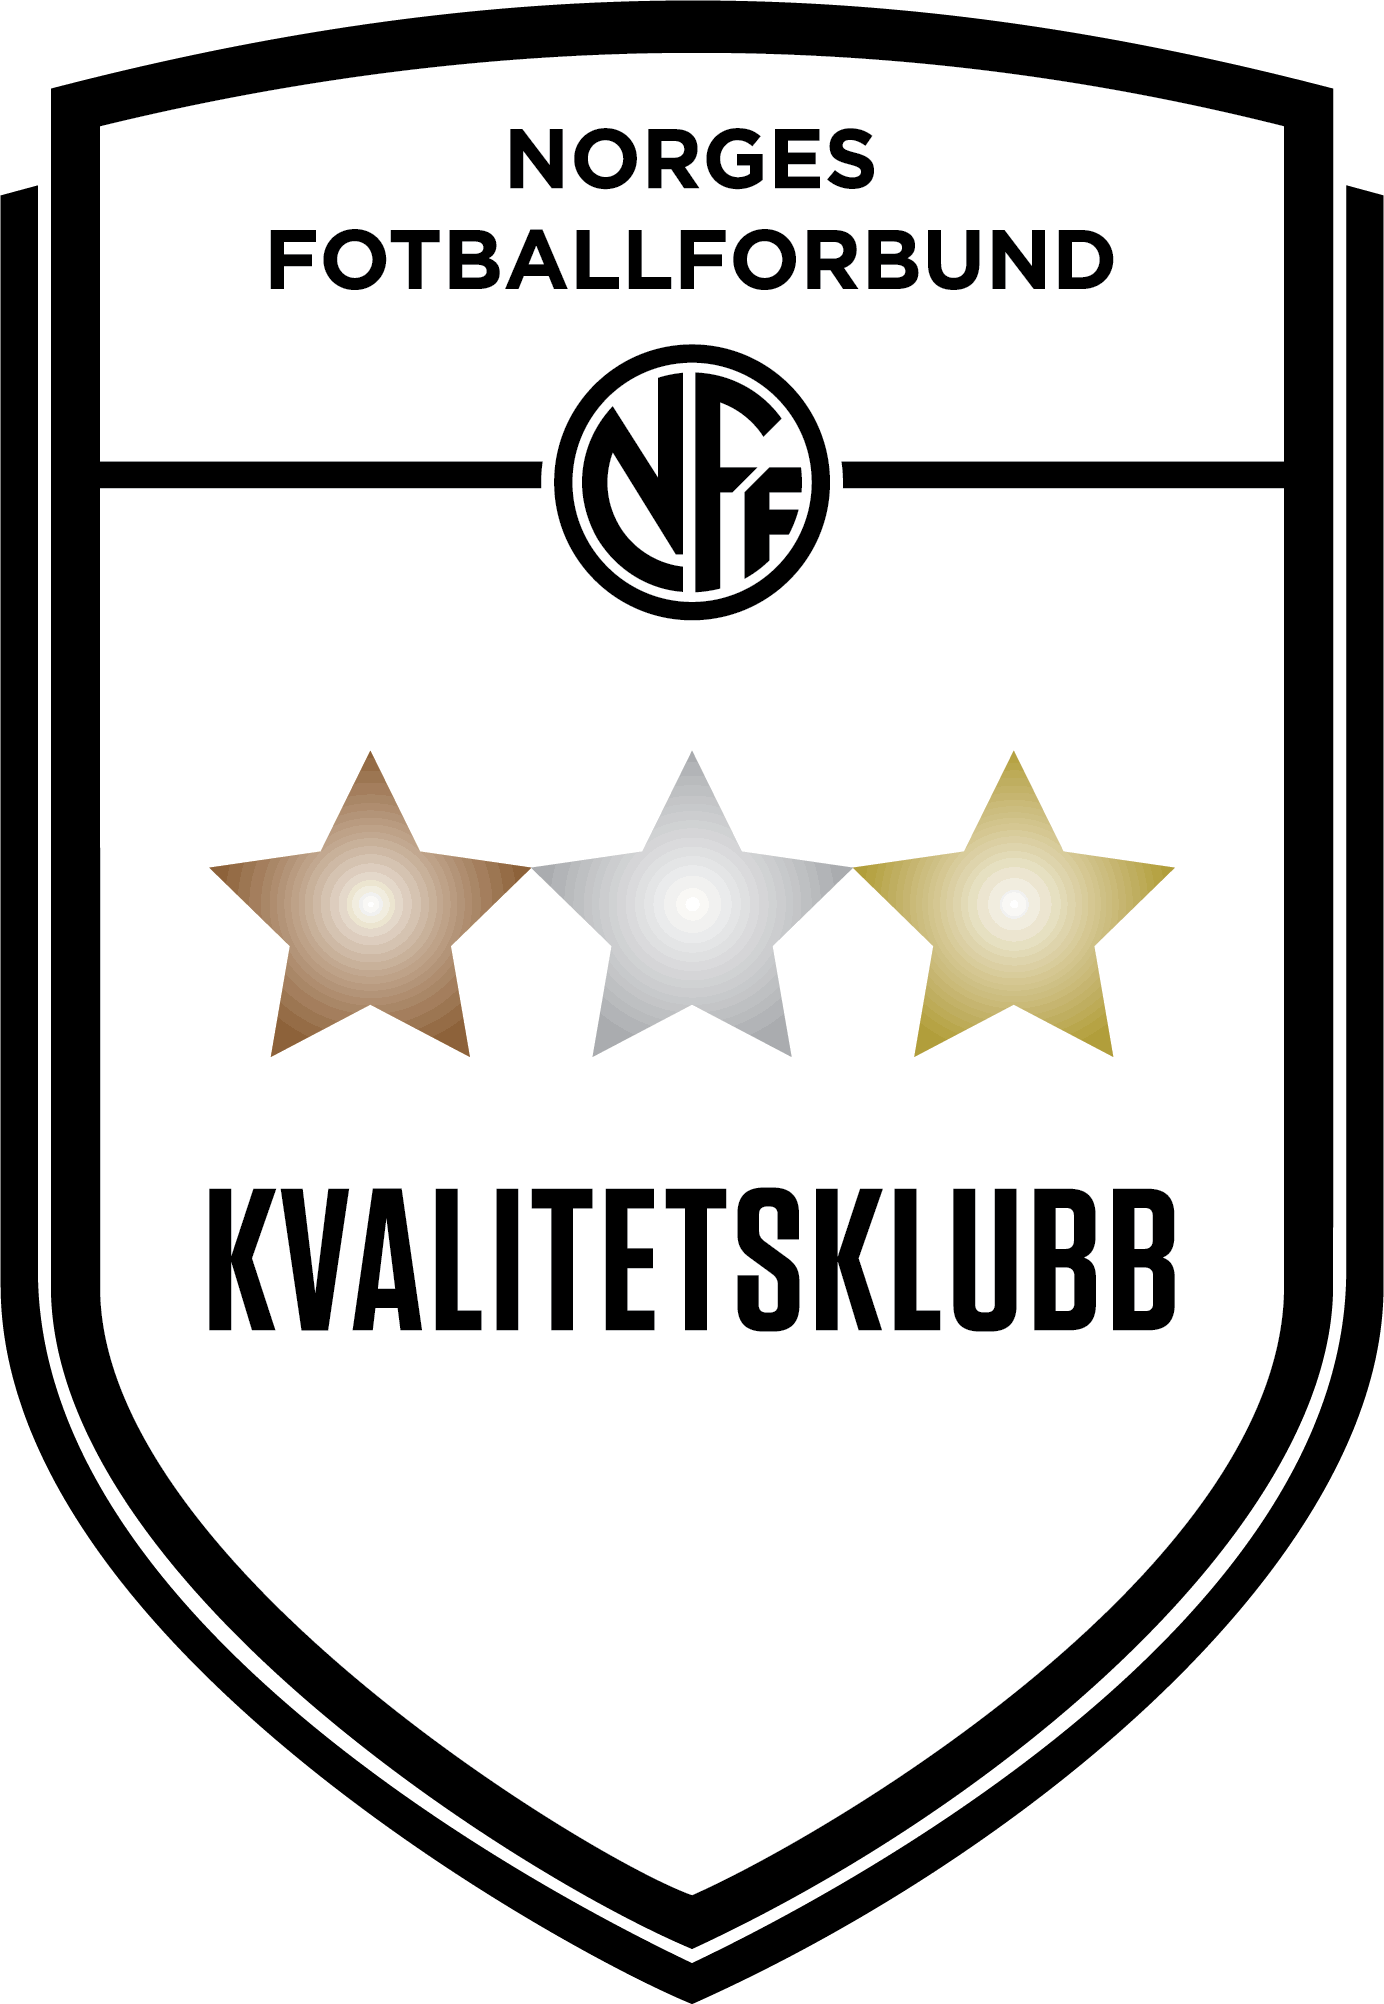 Kvalitetsklubb logo Norges fotballforbund